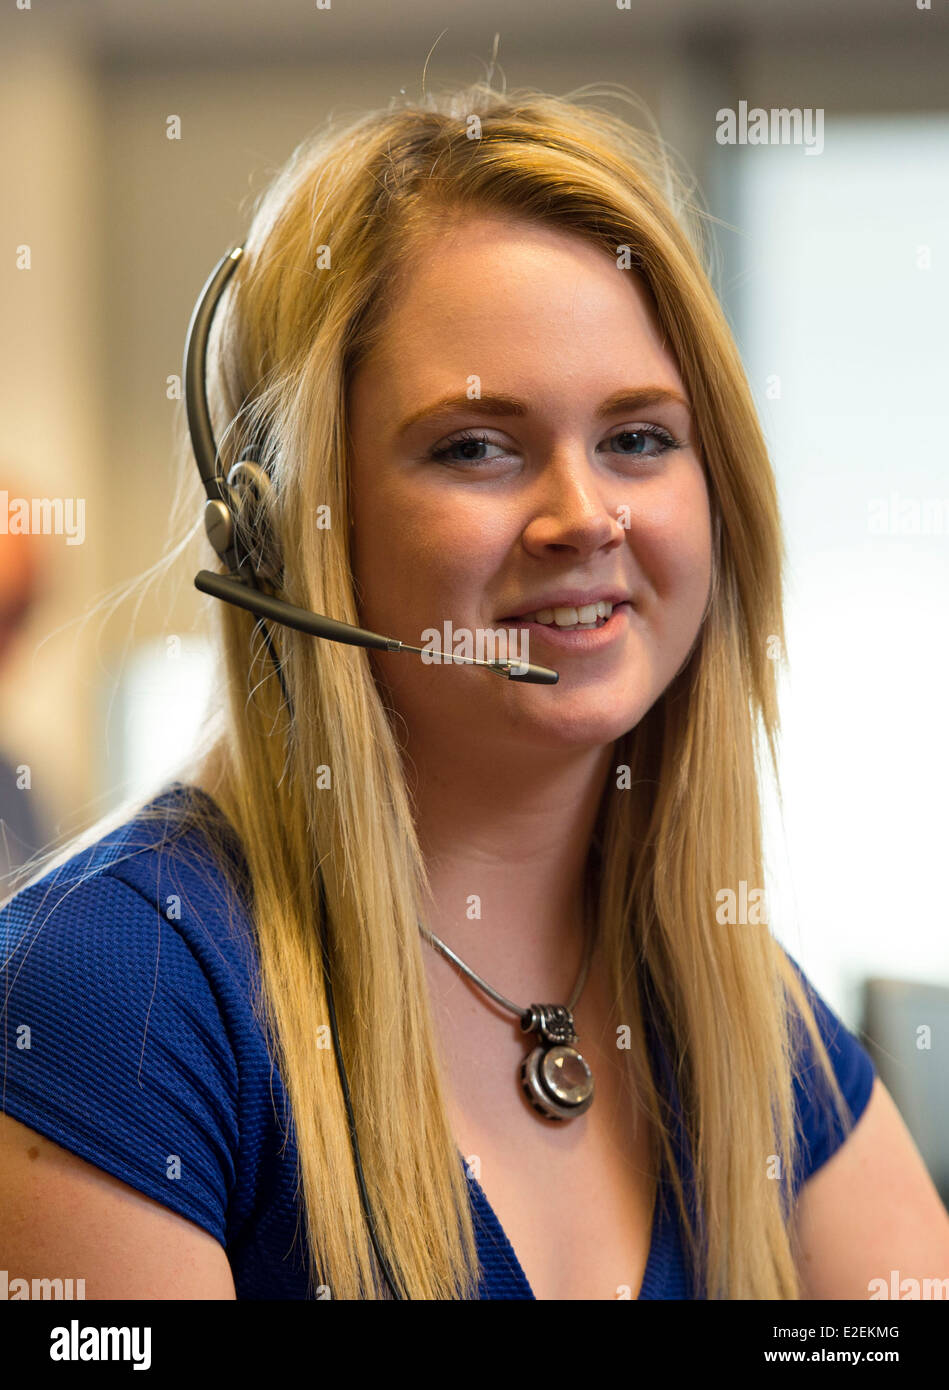 Ein blonde weibliche Call Center Arbeiter bei der Arbeit. Stockfoto